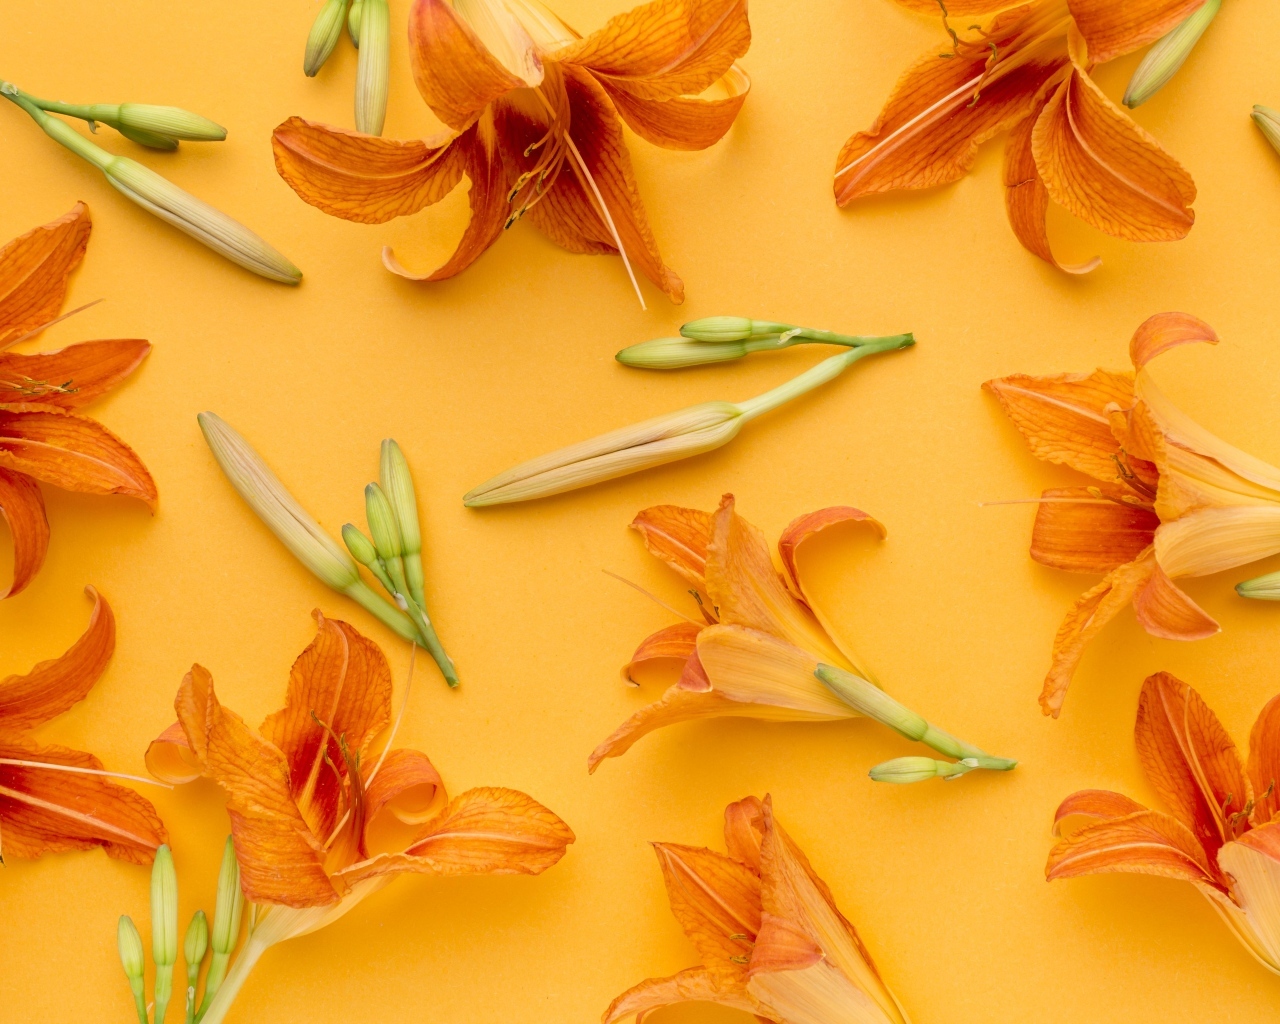 Оранжевые цветы лилейника на желтом фоне